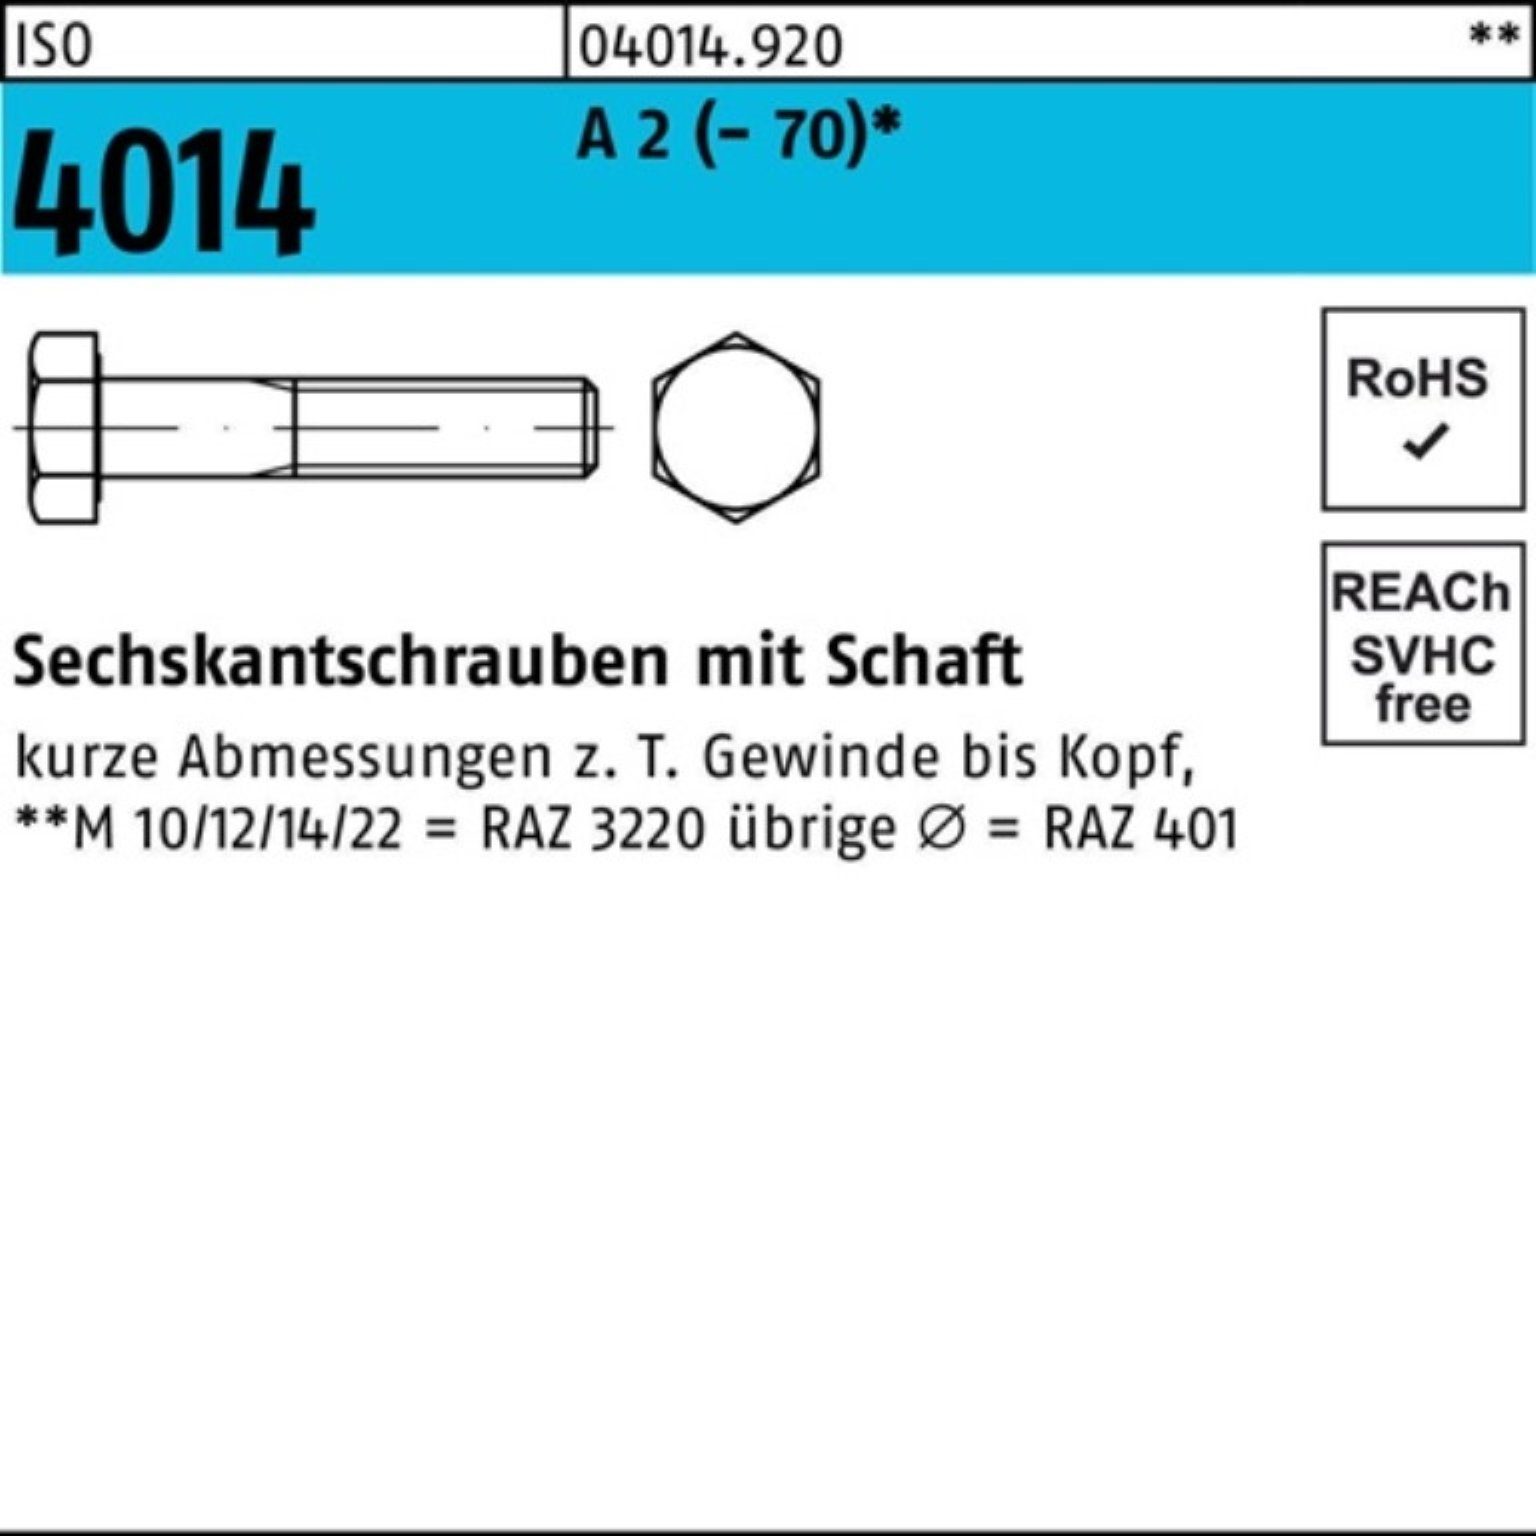 Bufab Sechskantschraube 100er Pack Sechskantschraube ISO 4014 Schaft M16x 110 A 2 (70) 25 St